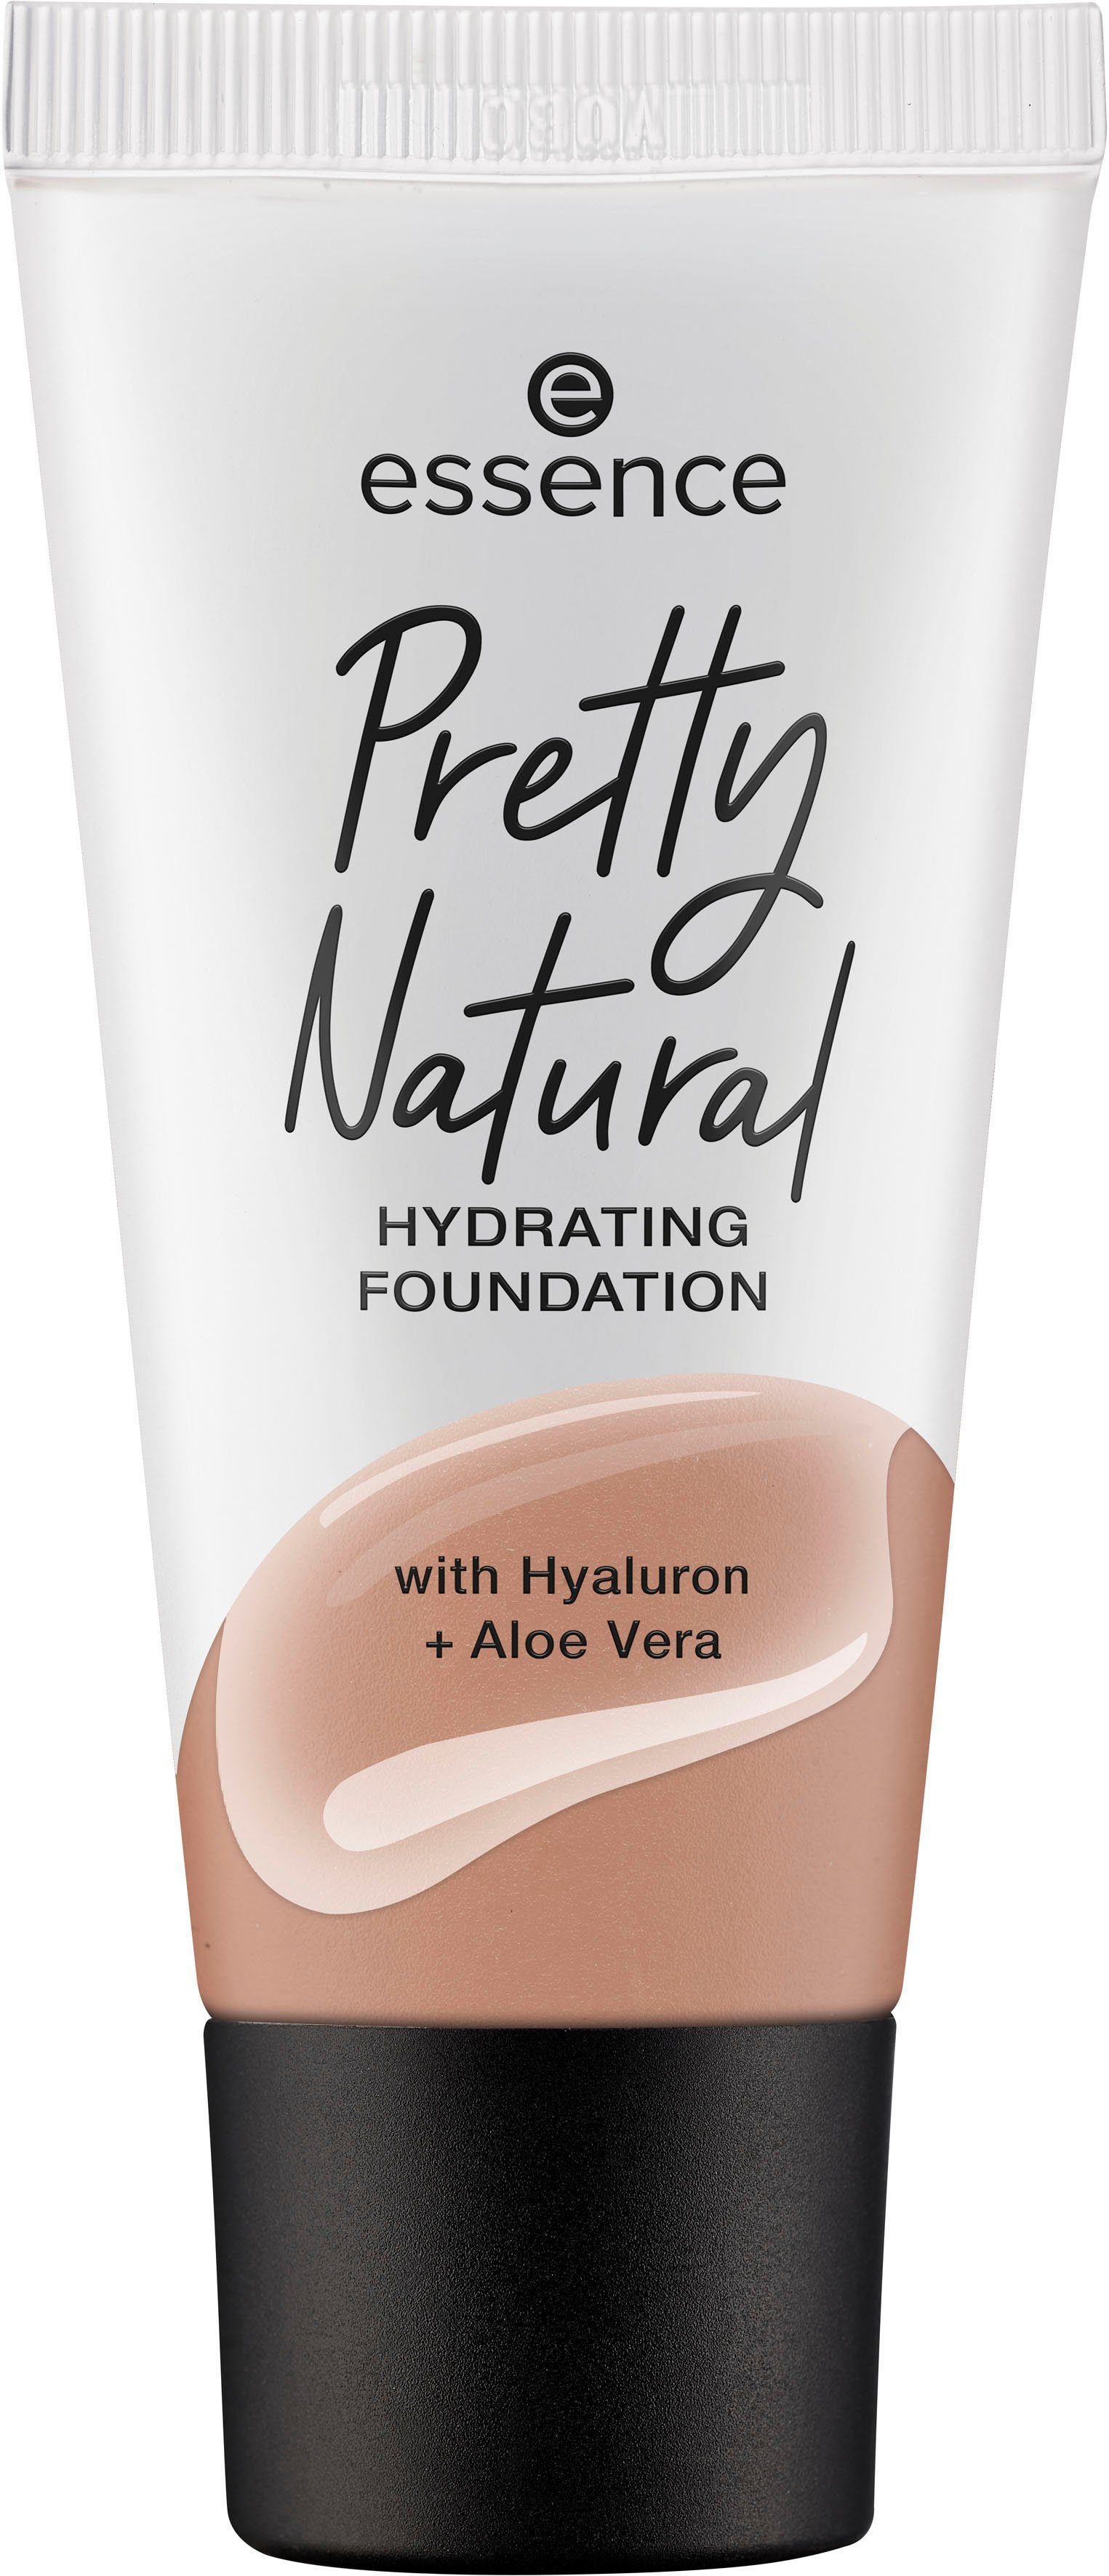 Essence Foundation Pretty Natural HYDRATING, Warm 3-tlg. Nutmeg